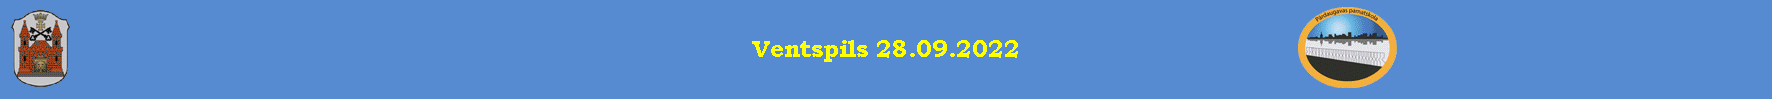 Ventspils 28.09.2022